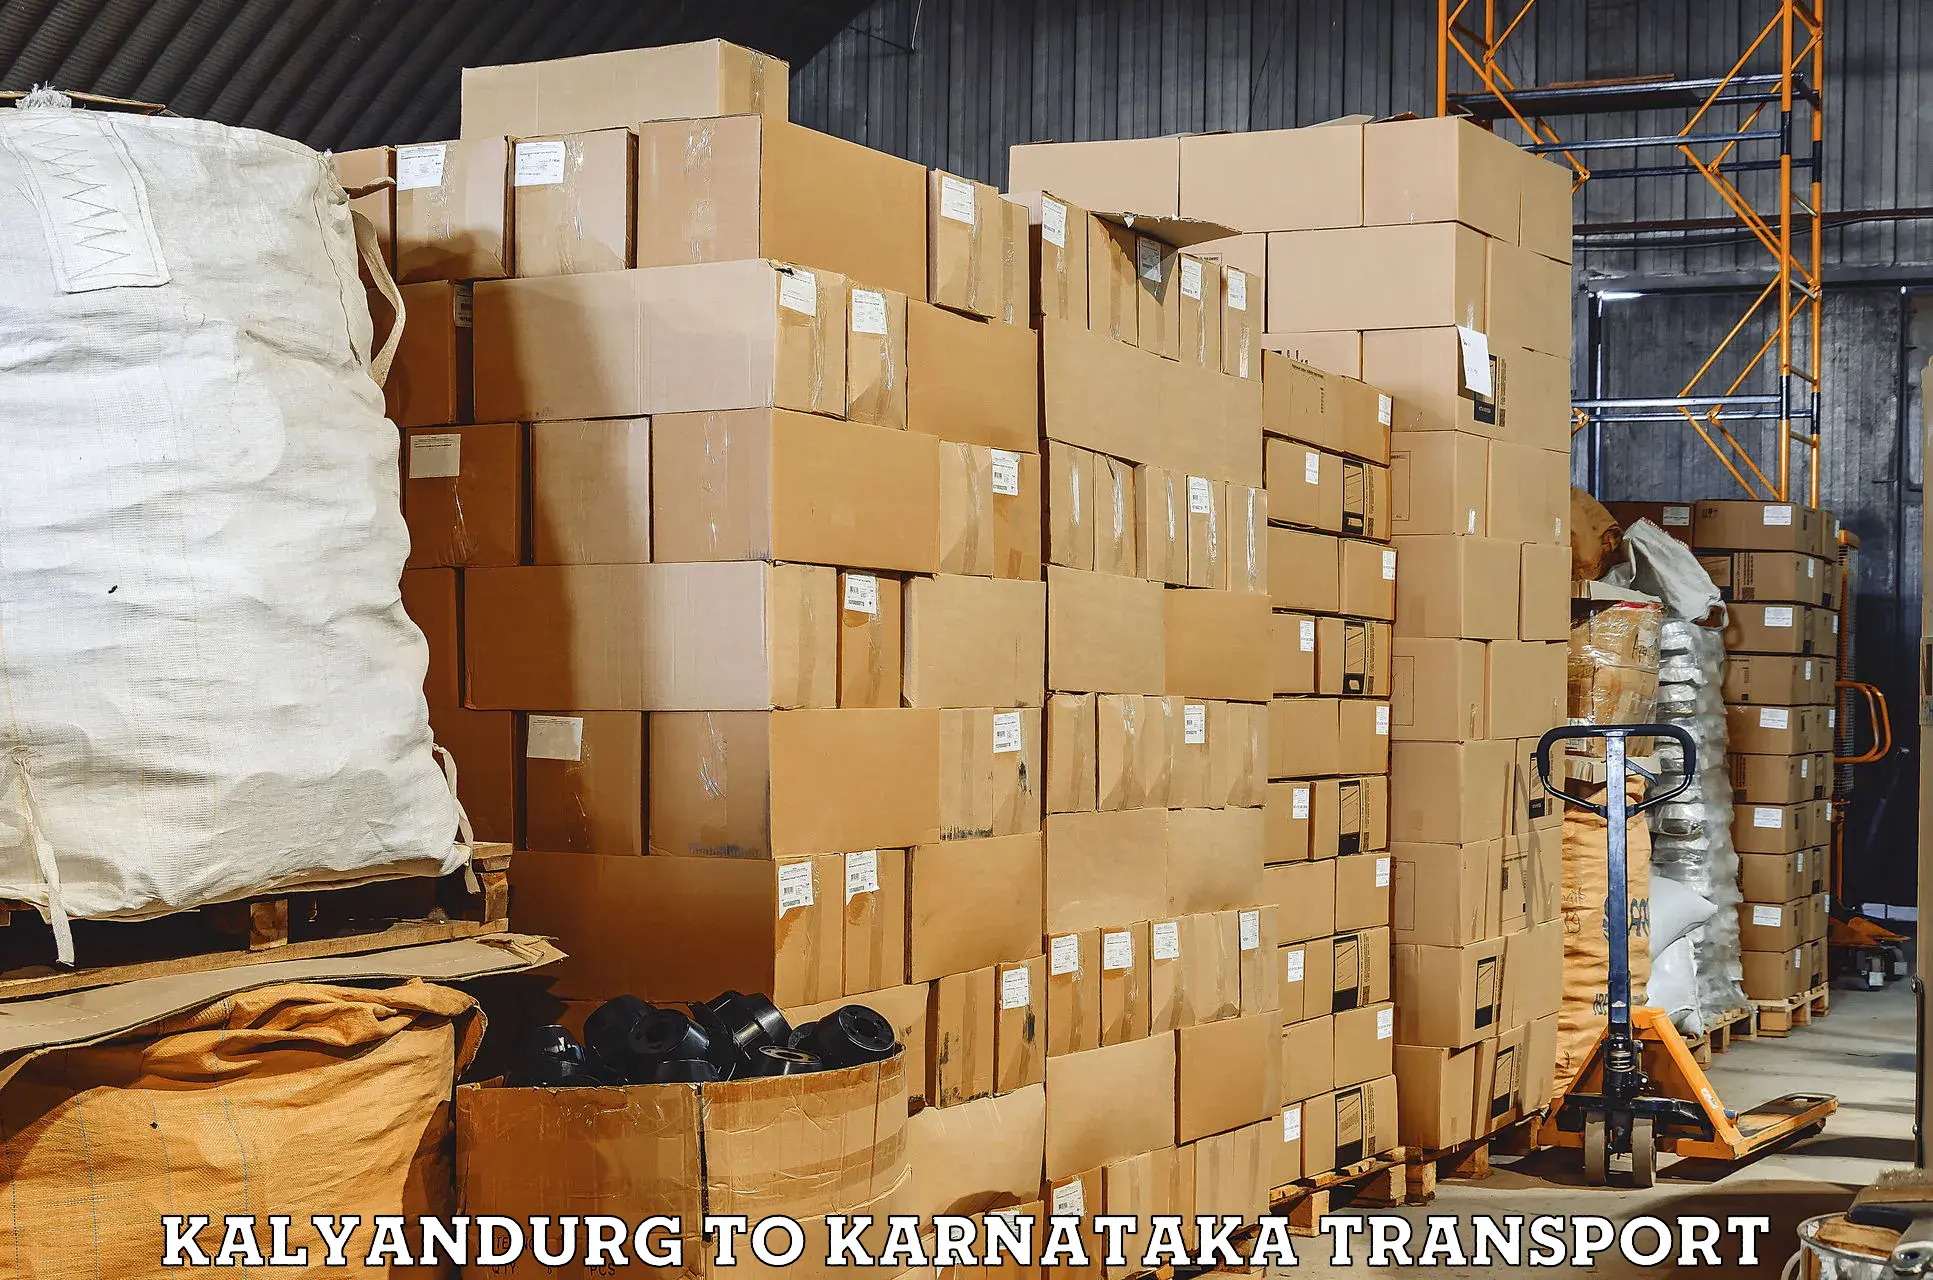 Transport in sharing Kalyandurg to Karnataka